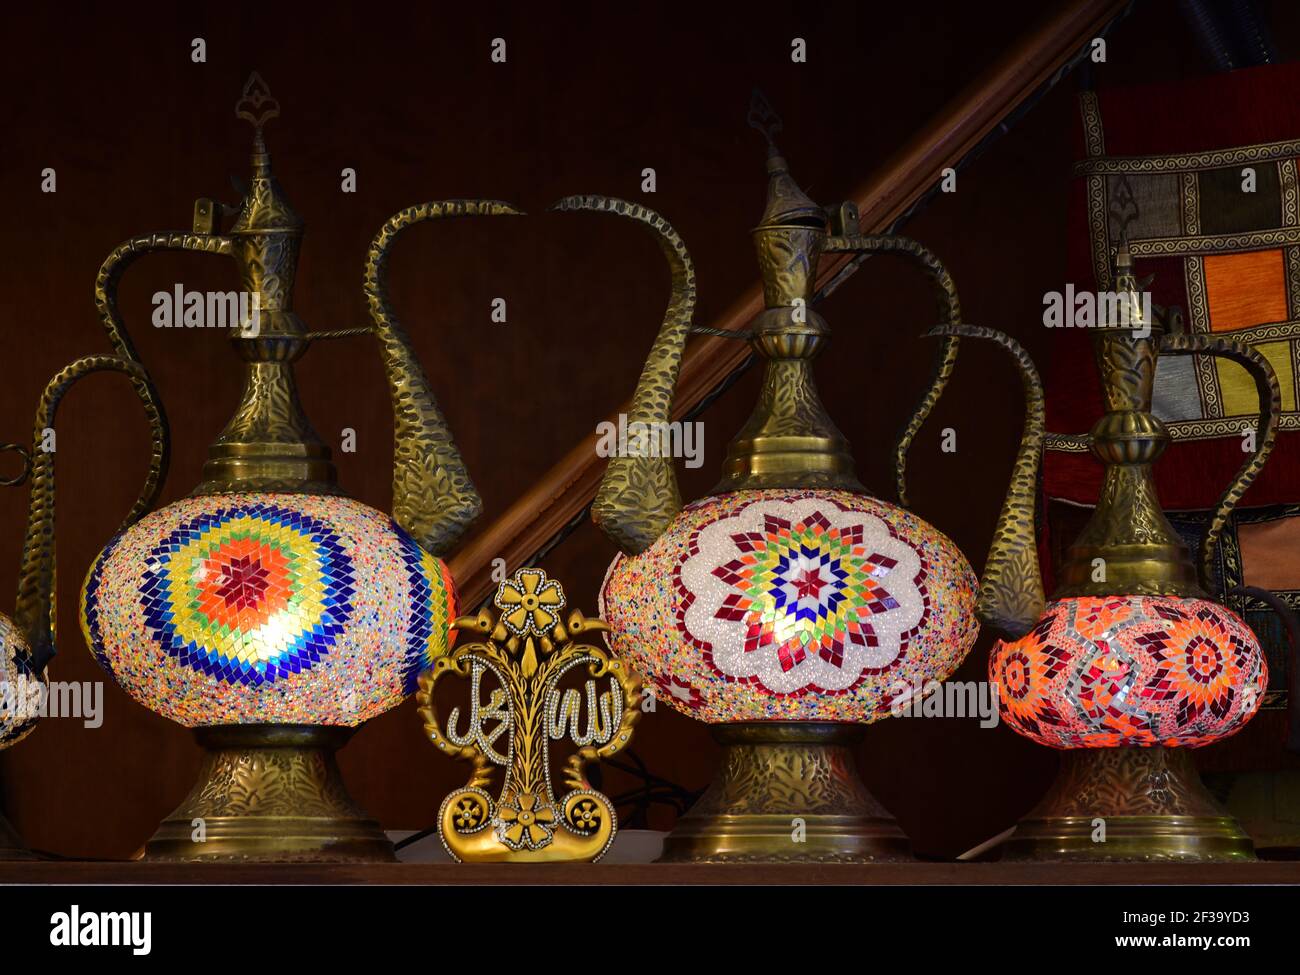 Vasi d'acqua in rame colorato splendidamente decorati. Turchia Foto Stock